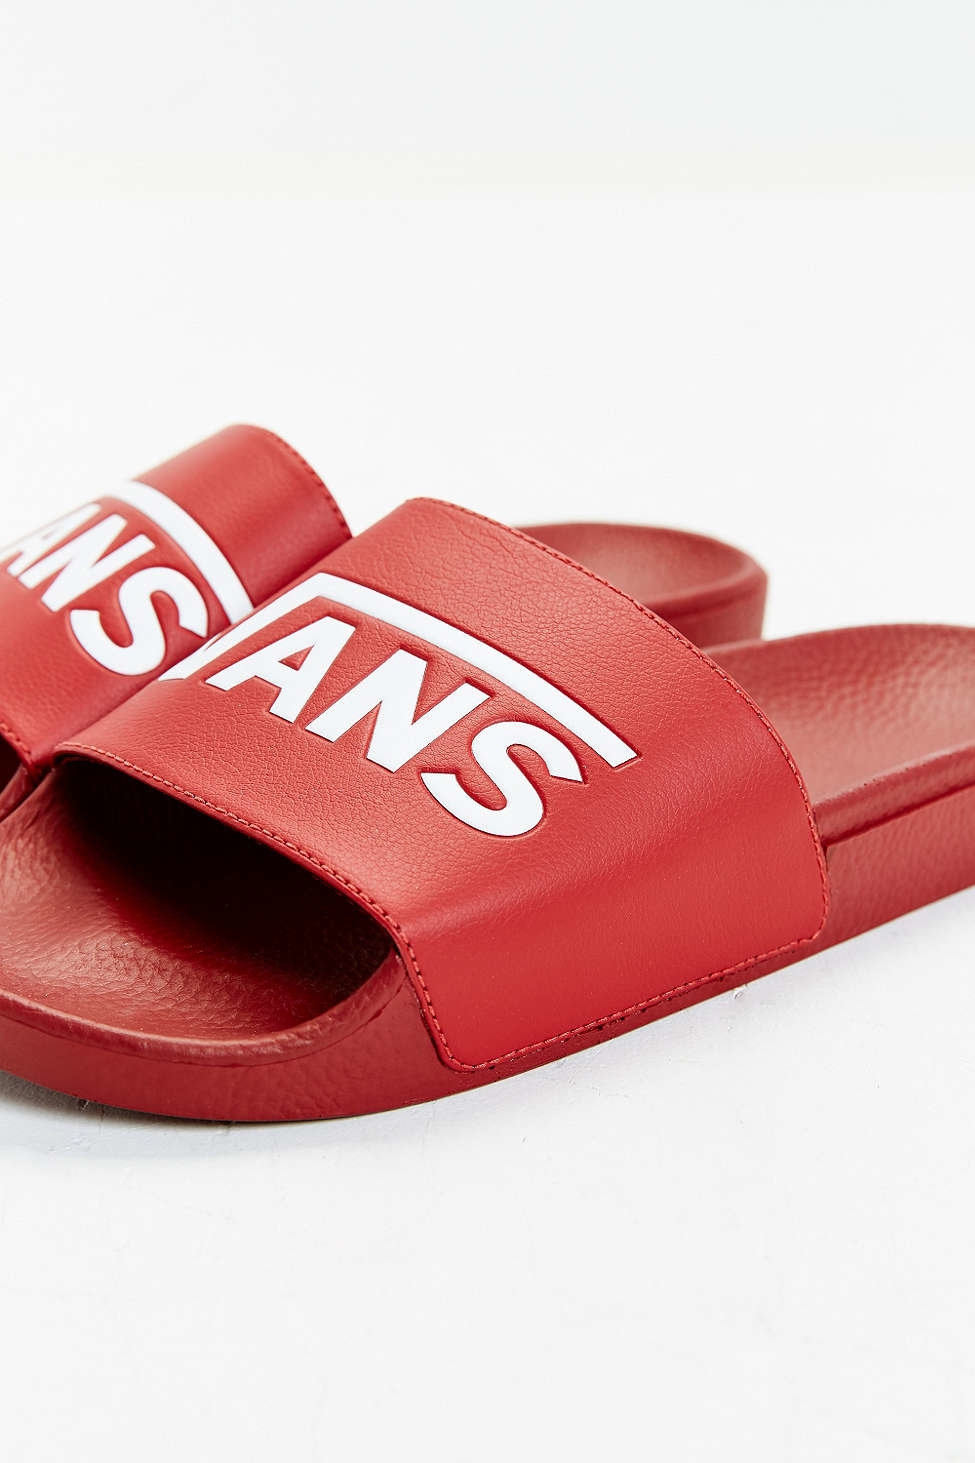 red vans sandals